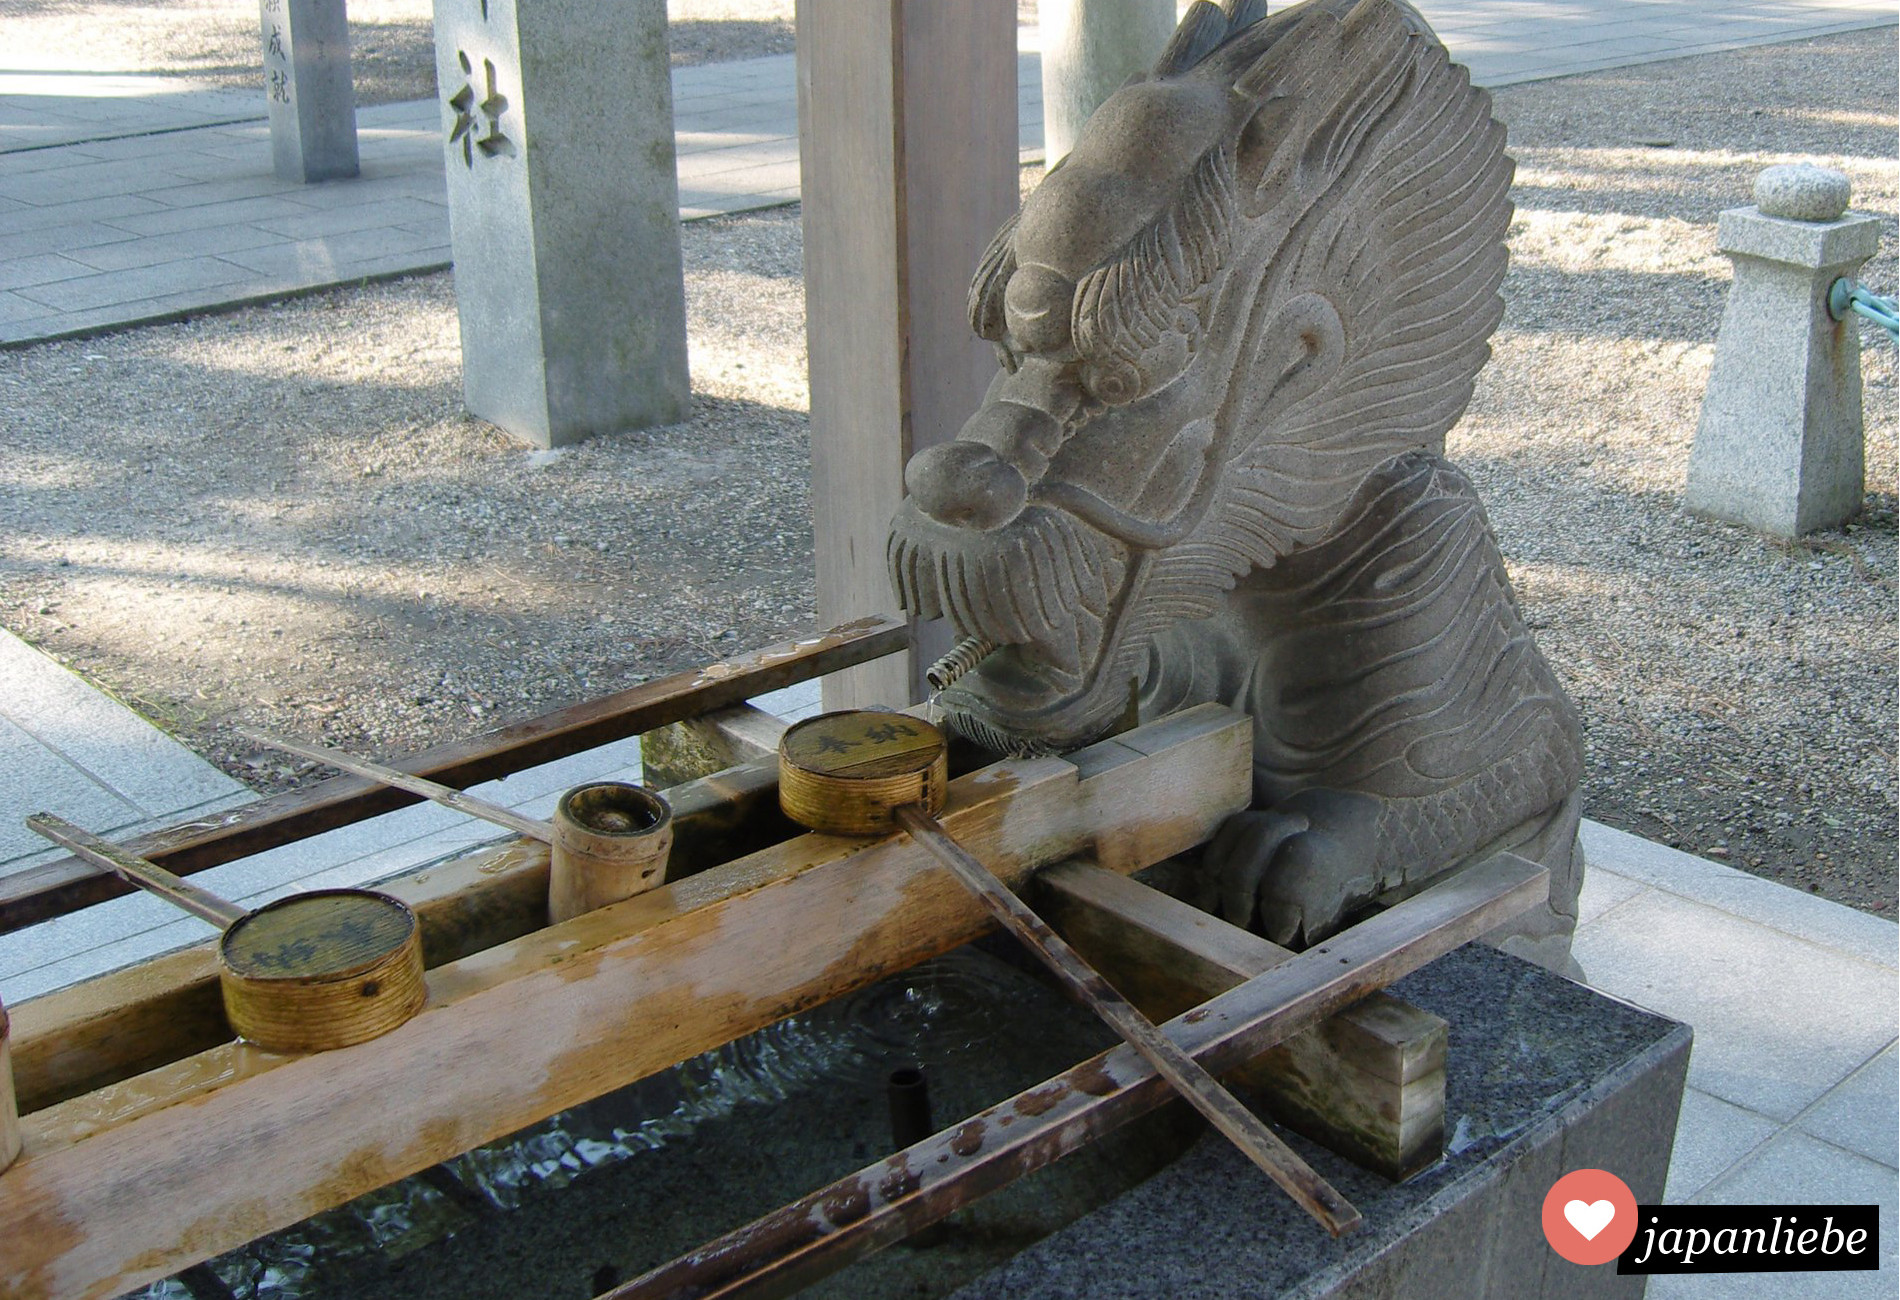 Am Tatsuki-Schrein in Okazaki speist ein steinerner Drache das Wasser in den temizuya-Brunnen.